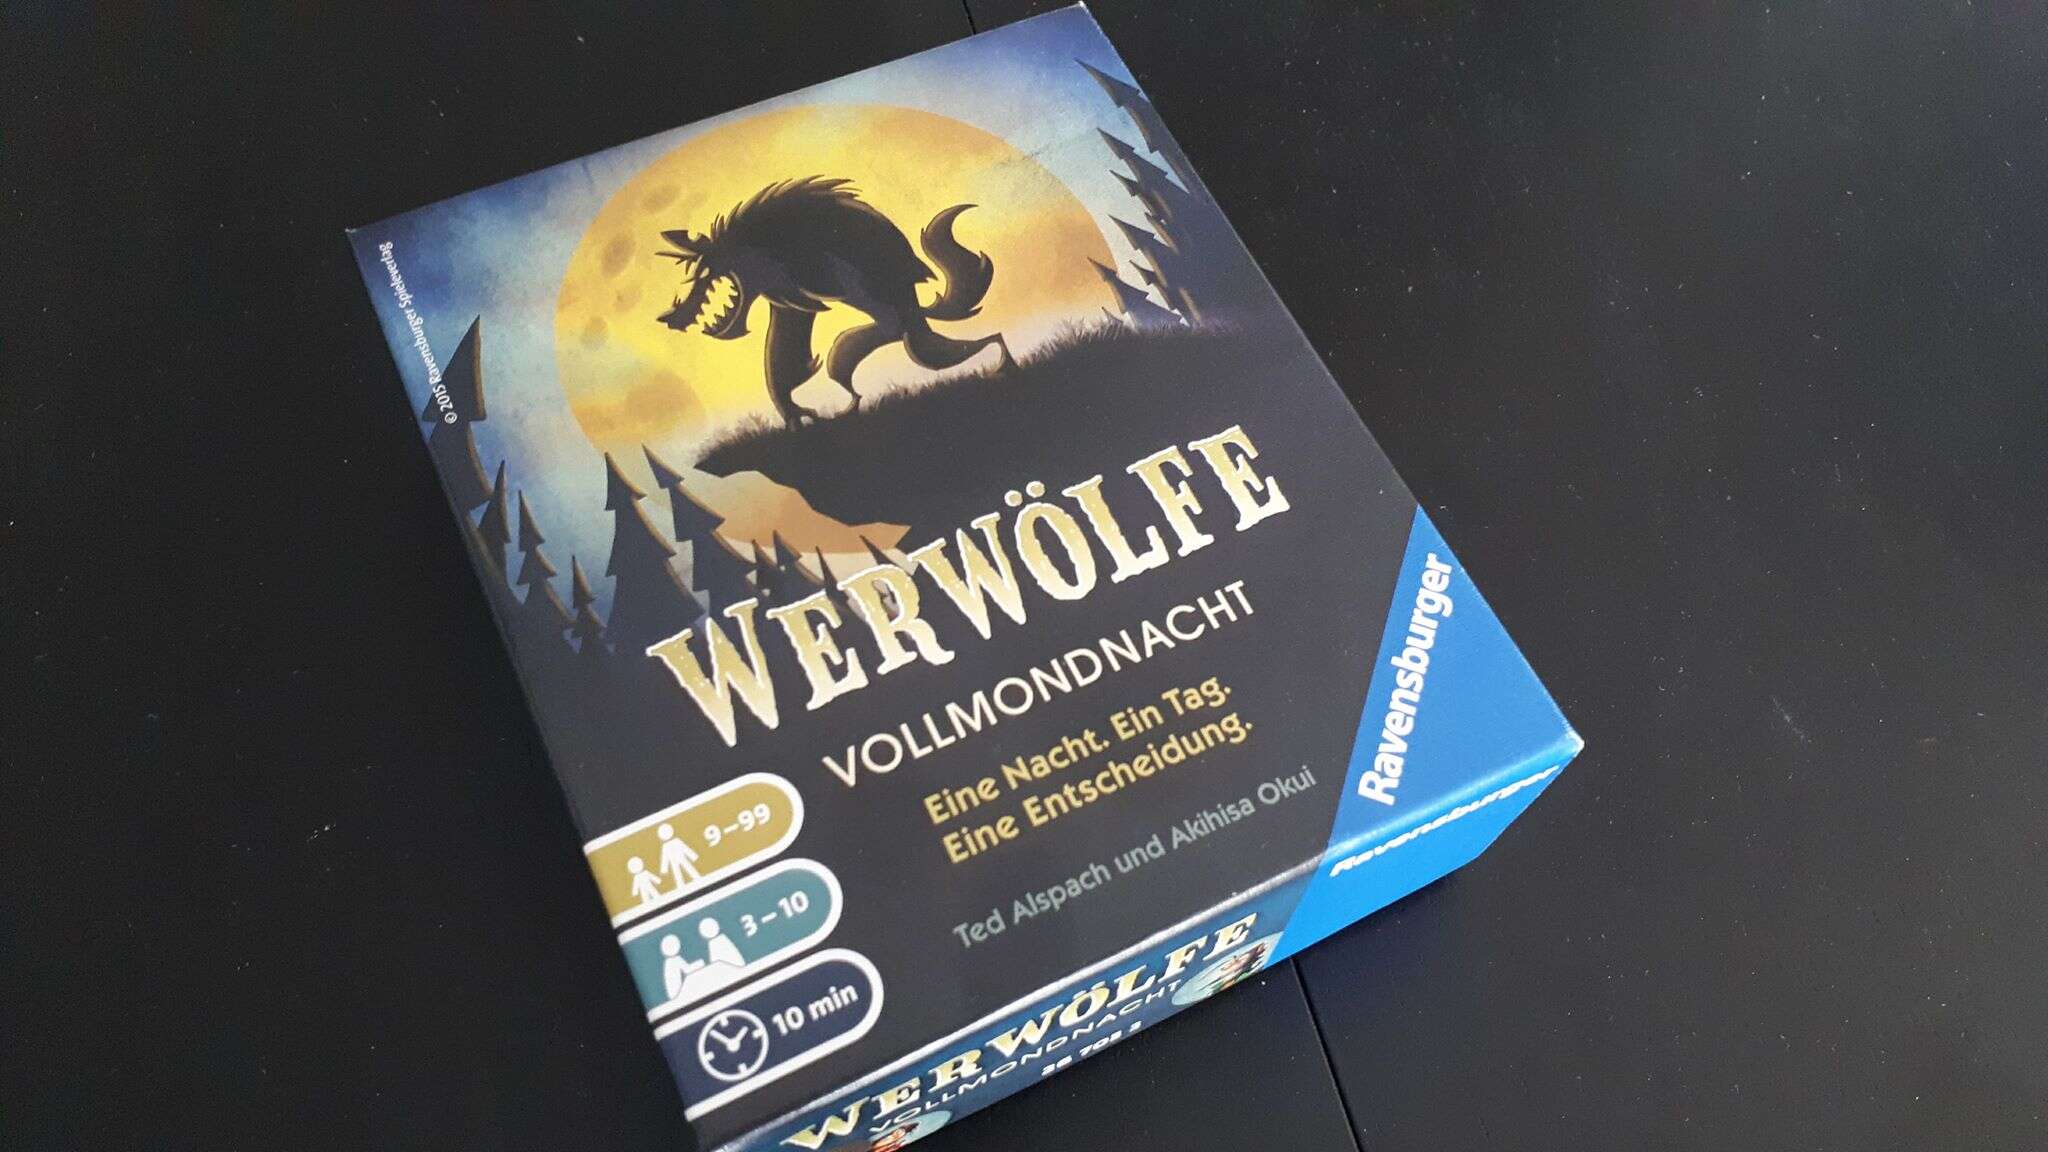 One Night Ultimate Werewolf – Върколакът, който става за нещо (поне за мен)